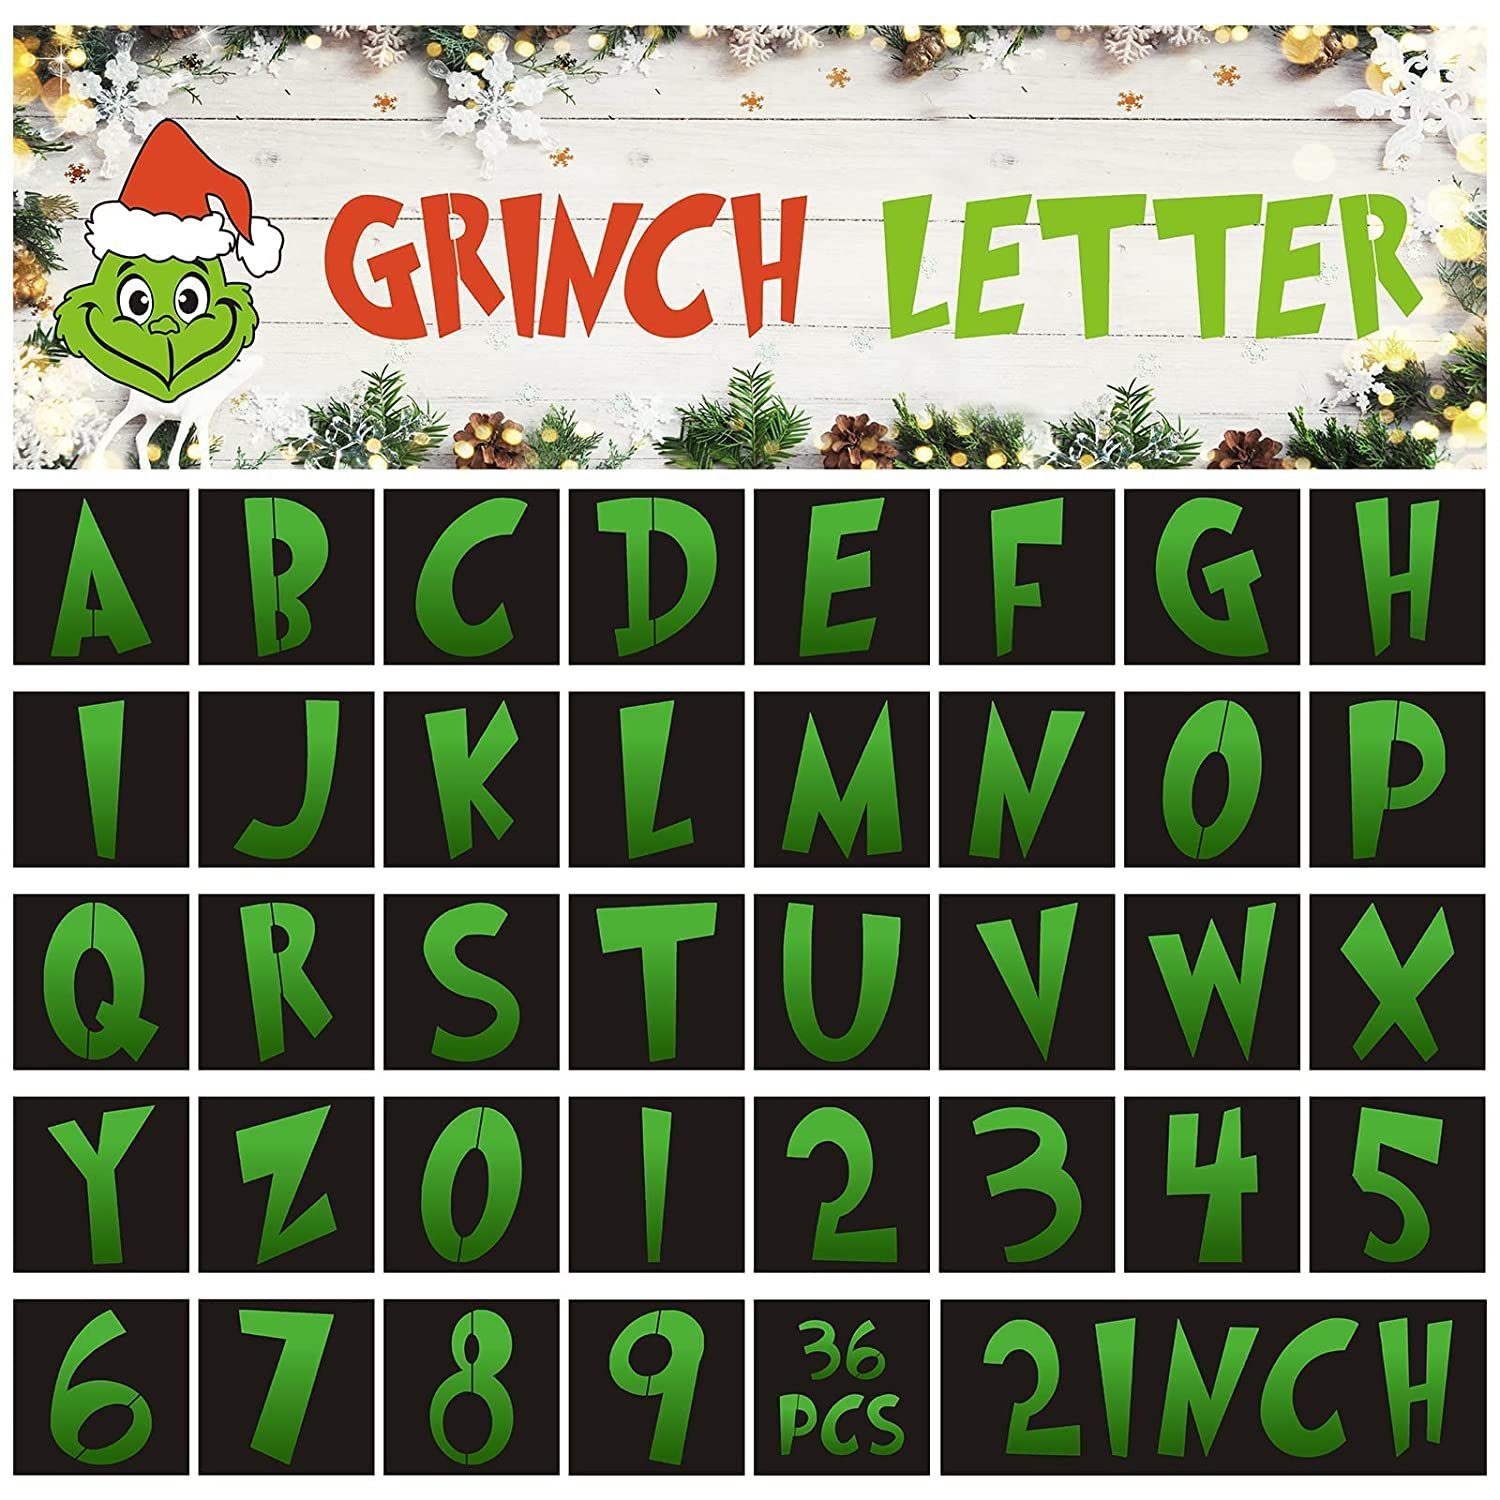 36 Pieces Christmas Grinch Letter Stencils Reusable Grinch Letter